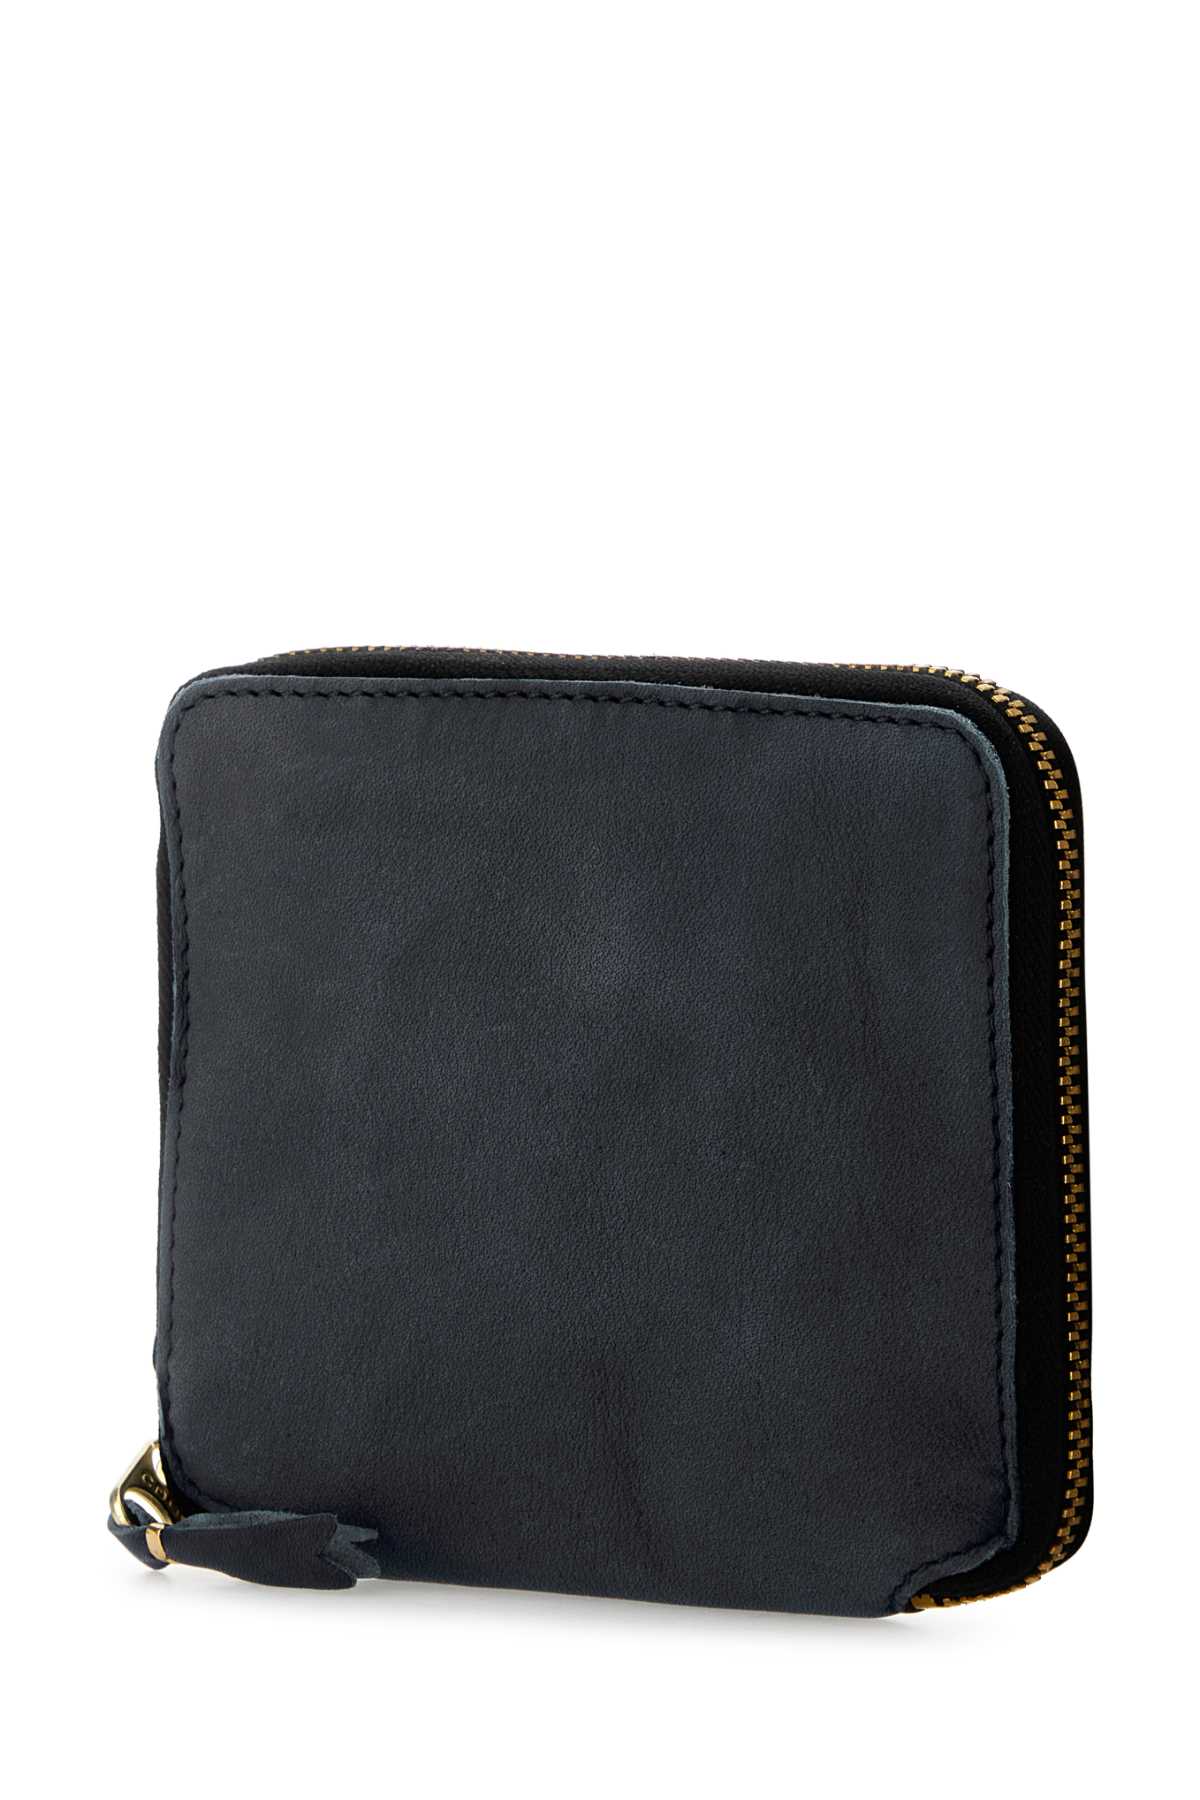 Comme Des Garçons Black Leather Wallet